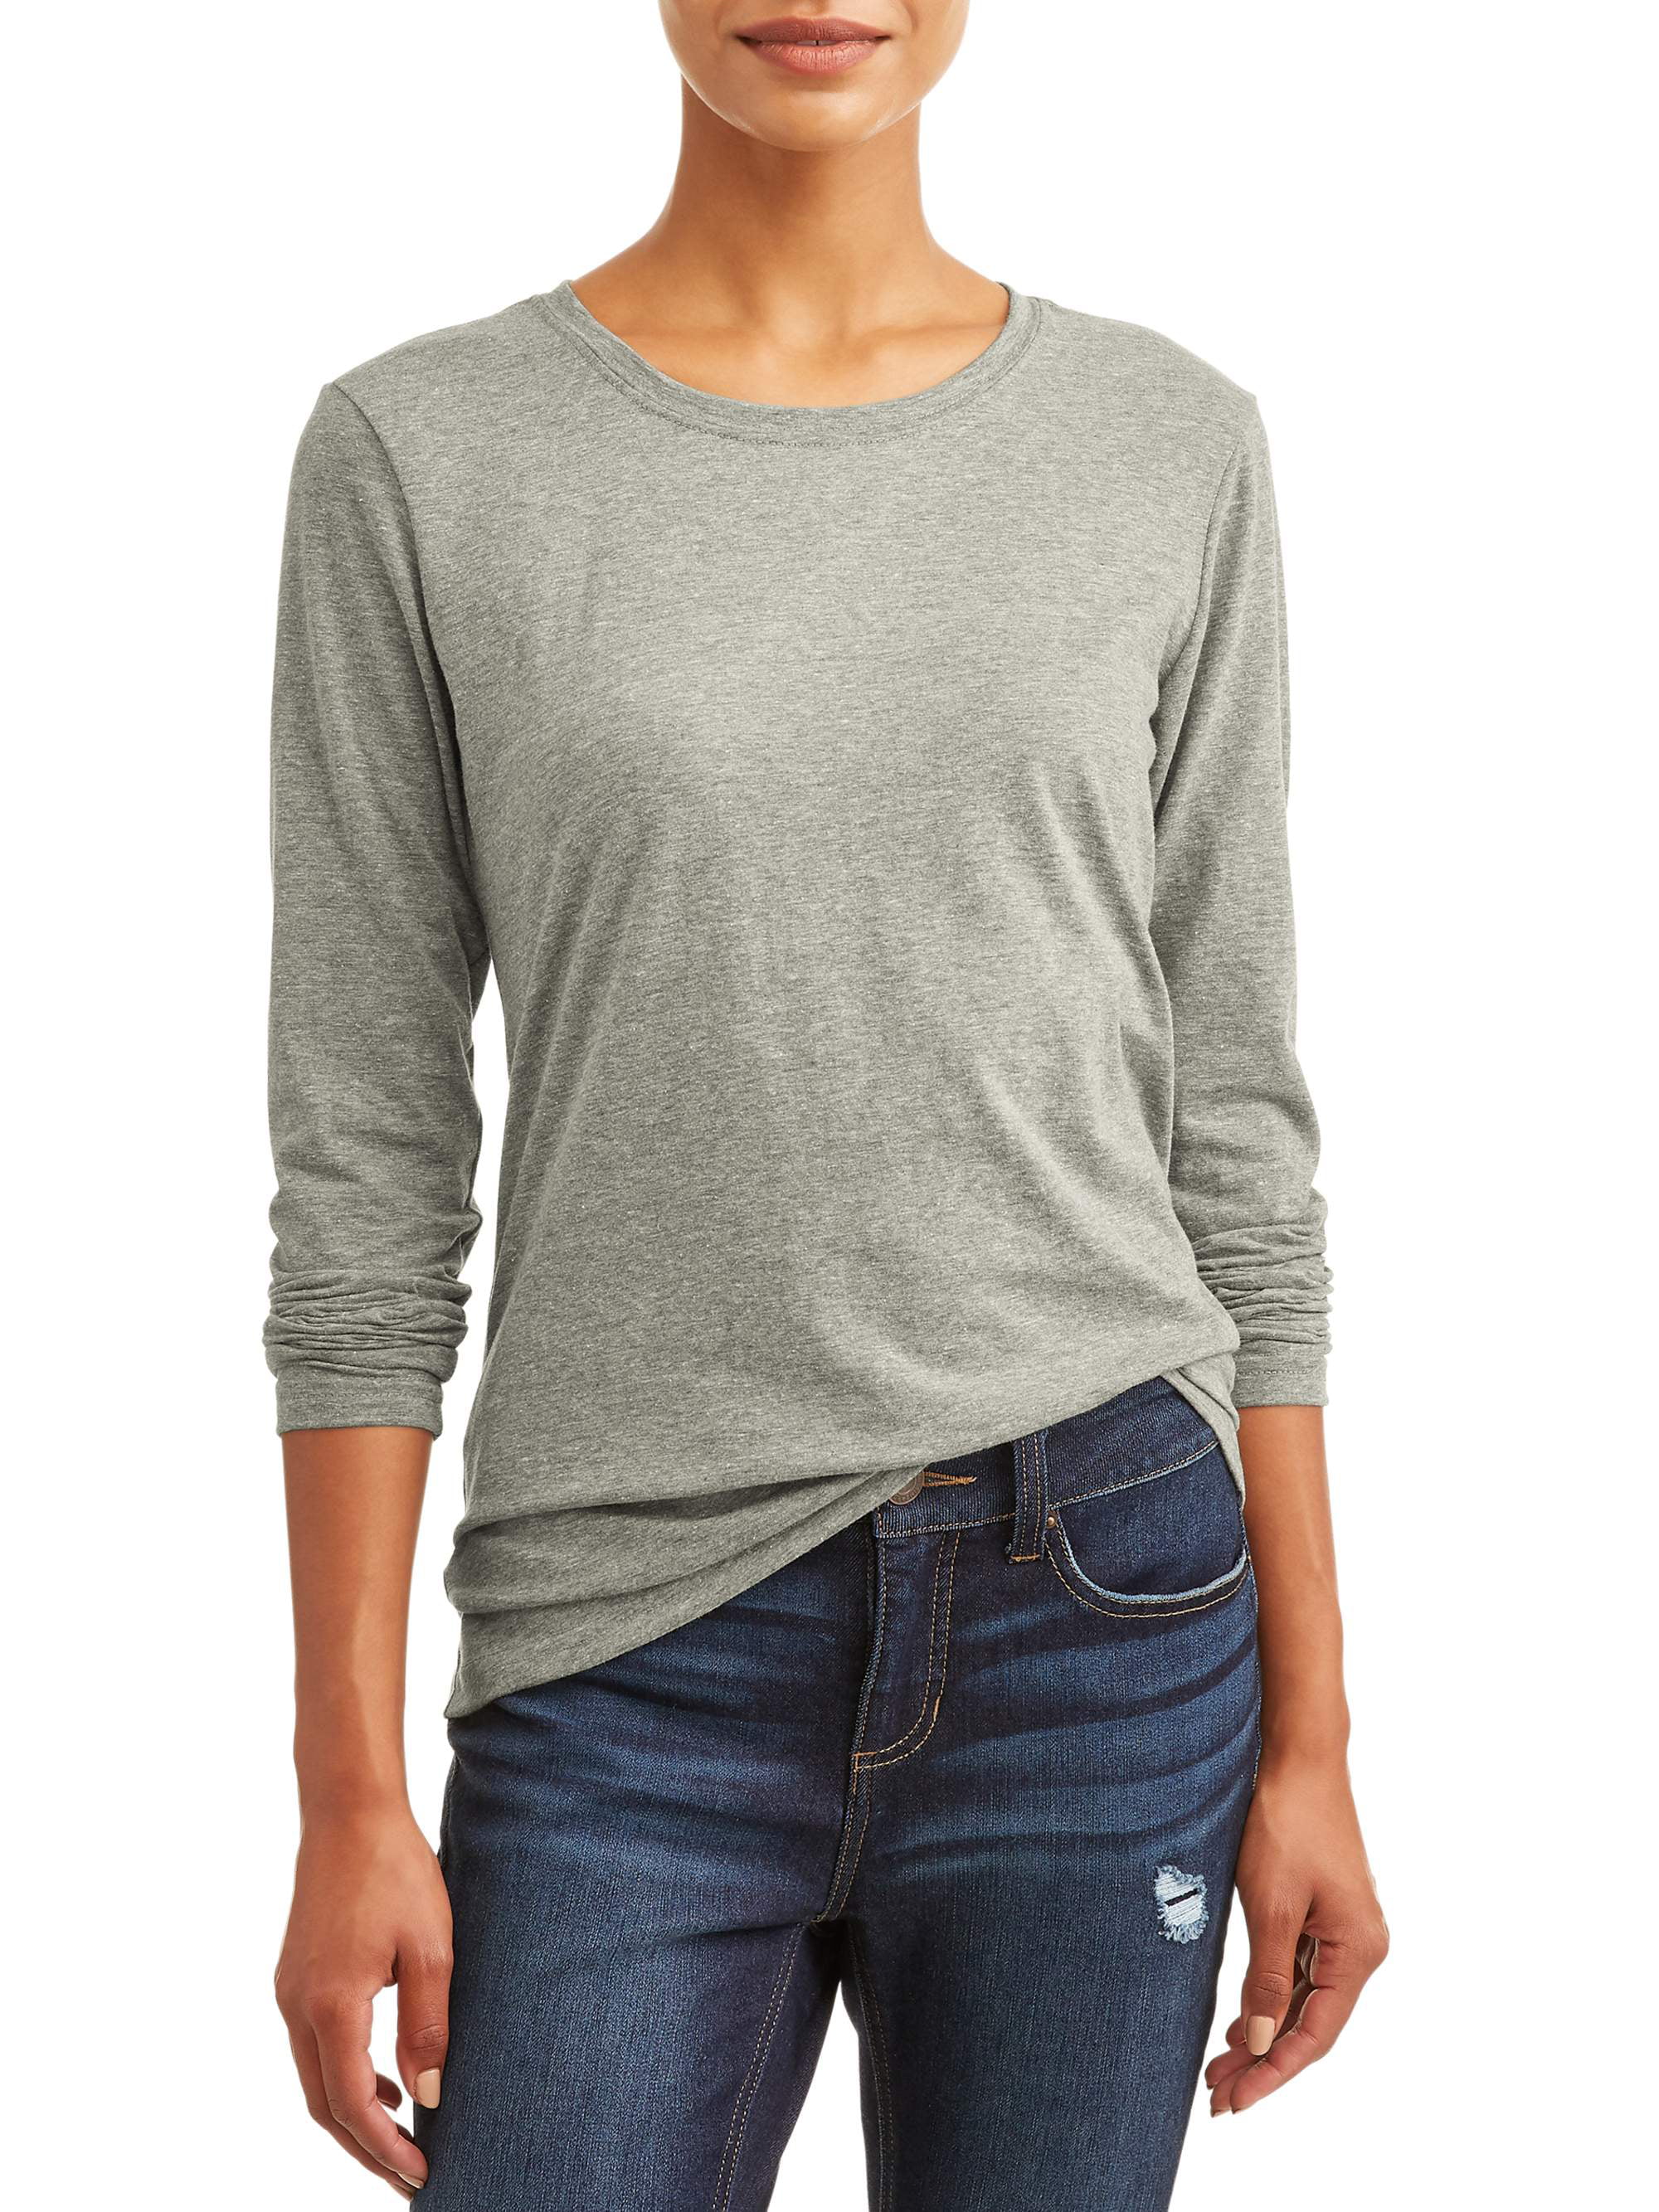 Women's Long Sleeve Crewneck T-Shirt - Walmart.com